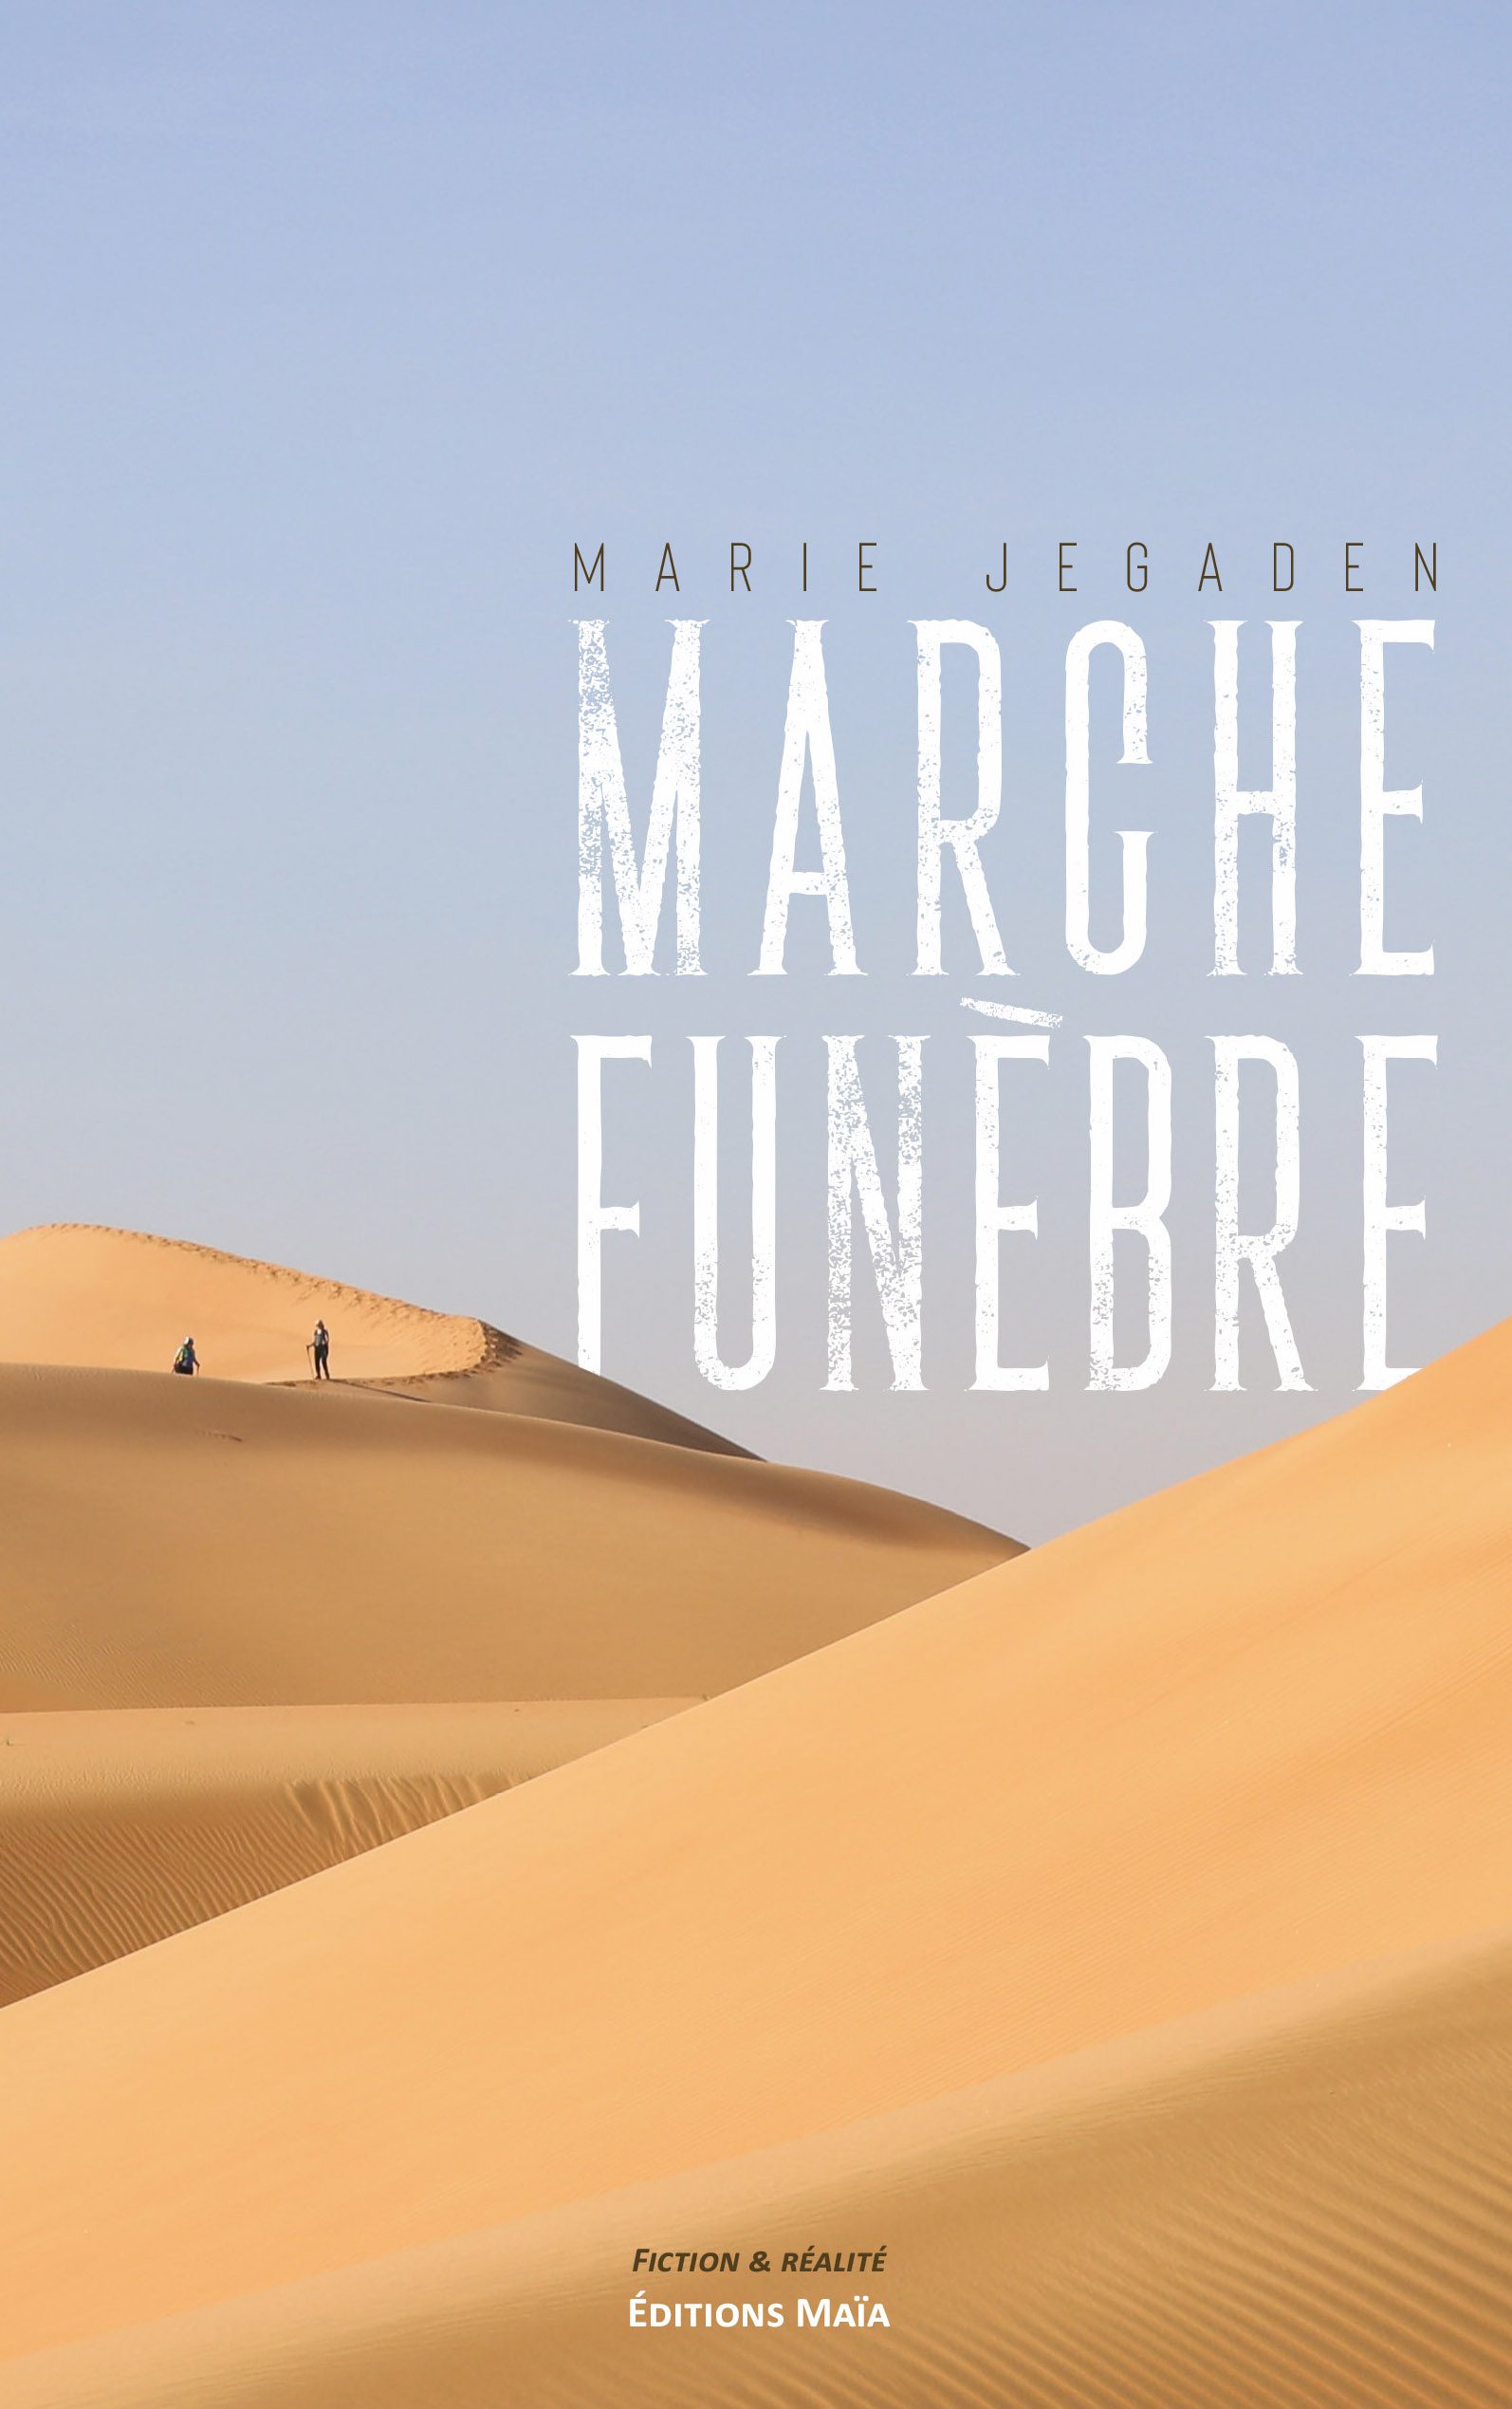 Entretien avec Marie Jegaden – Marche funèbre